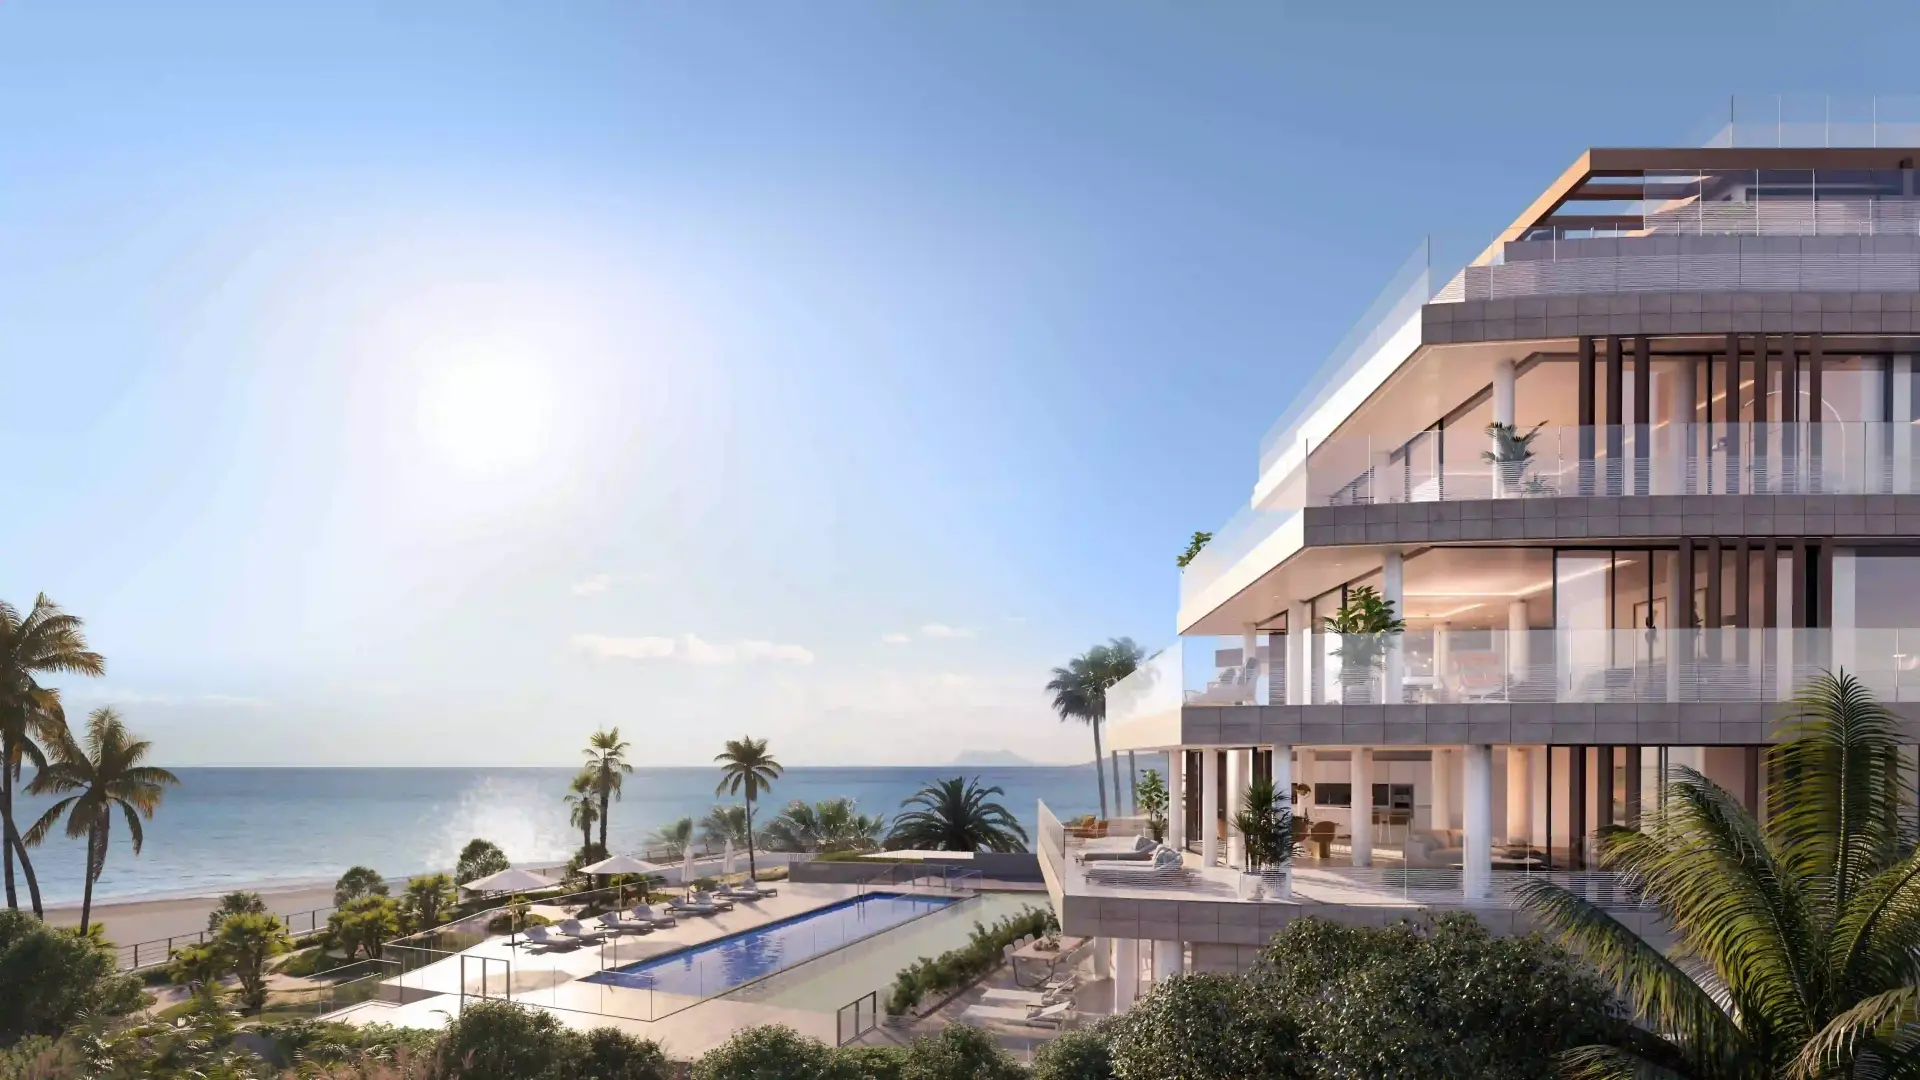 Stunning 2 bedroom frontline beach luxury flat in Estepona.